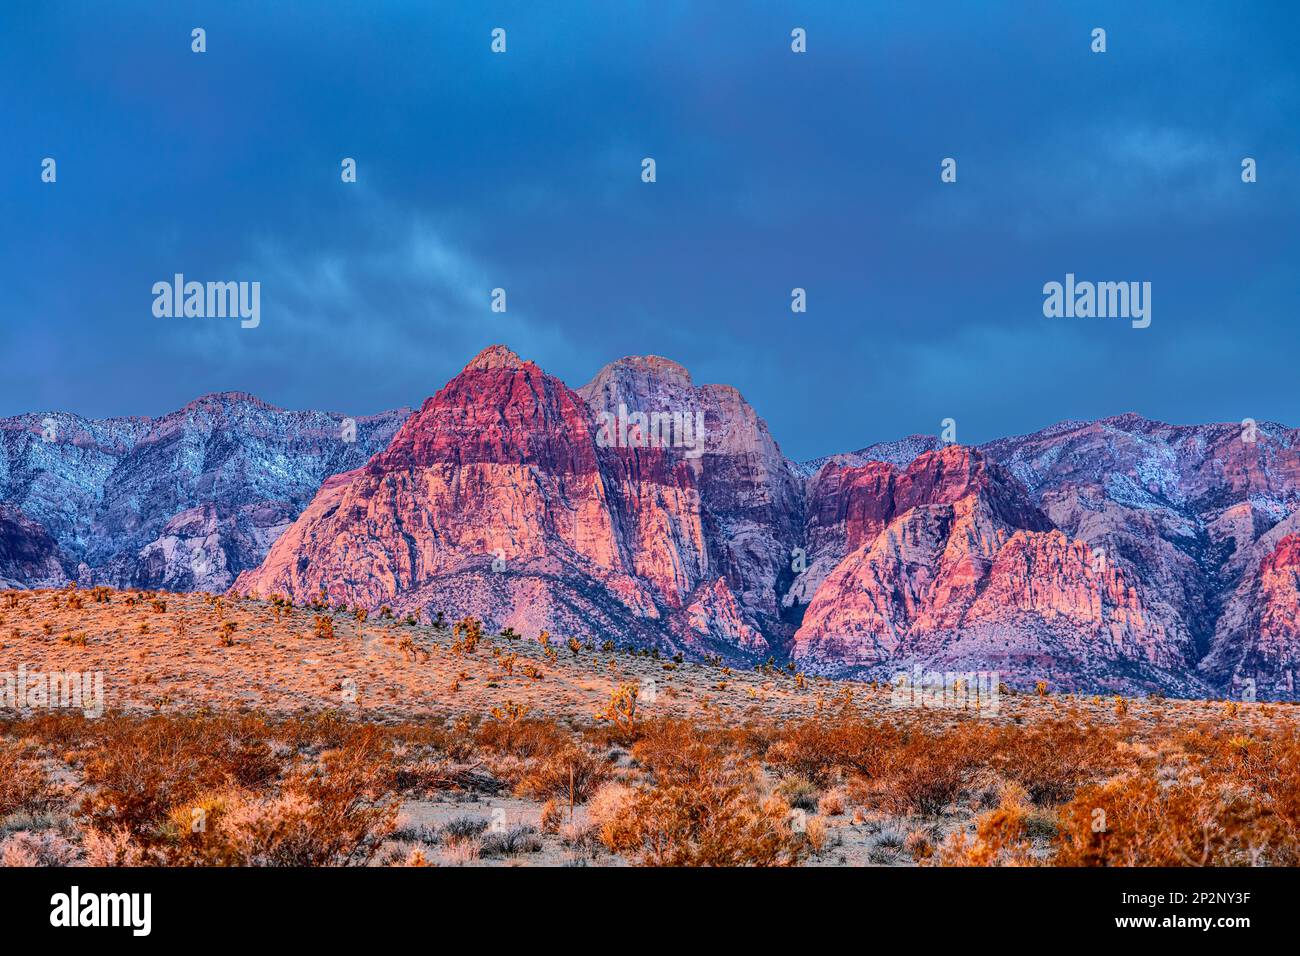 Gestreifte Felsen am Red Rock Canyon zeigen die Farbe, für die das Gebiet benannt ist. Attraktion für Wanderer, bergsteiger und Naturschützer. Stockfoto